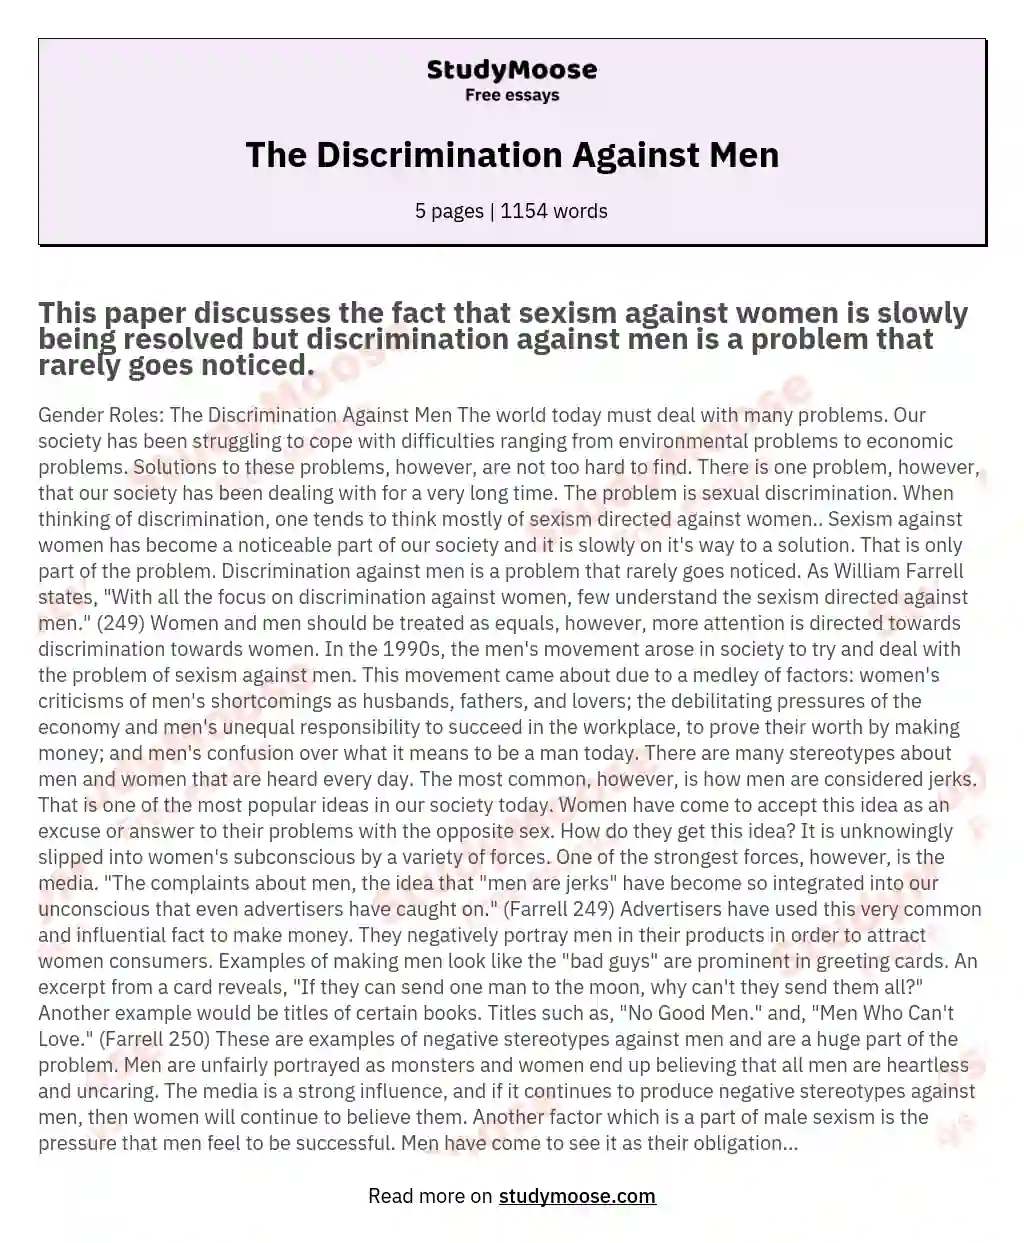 The Discrimination Against Men essay